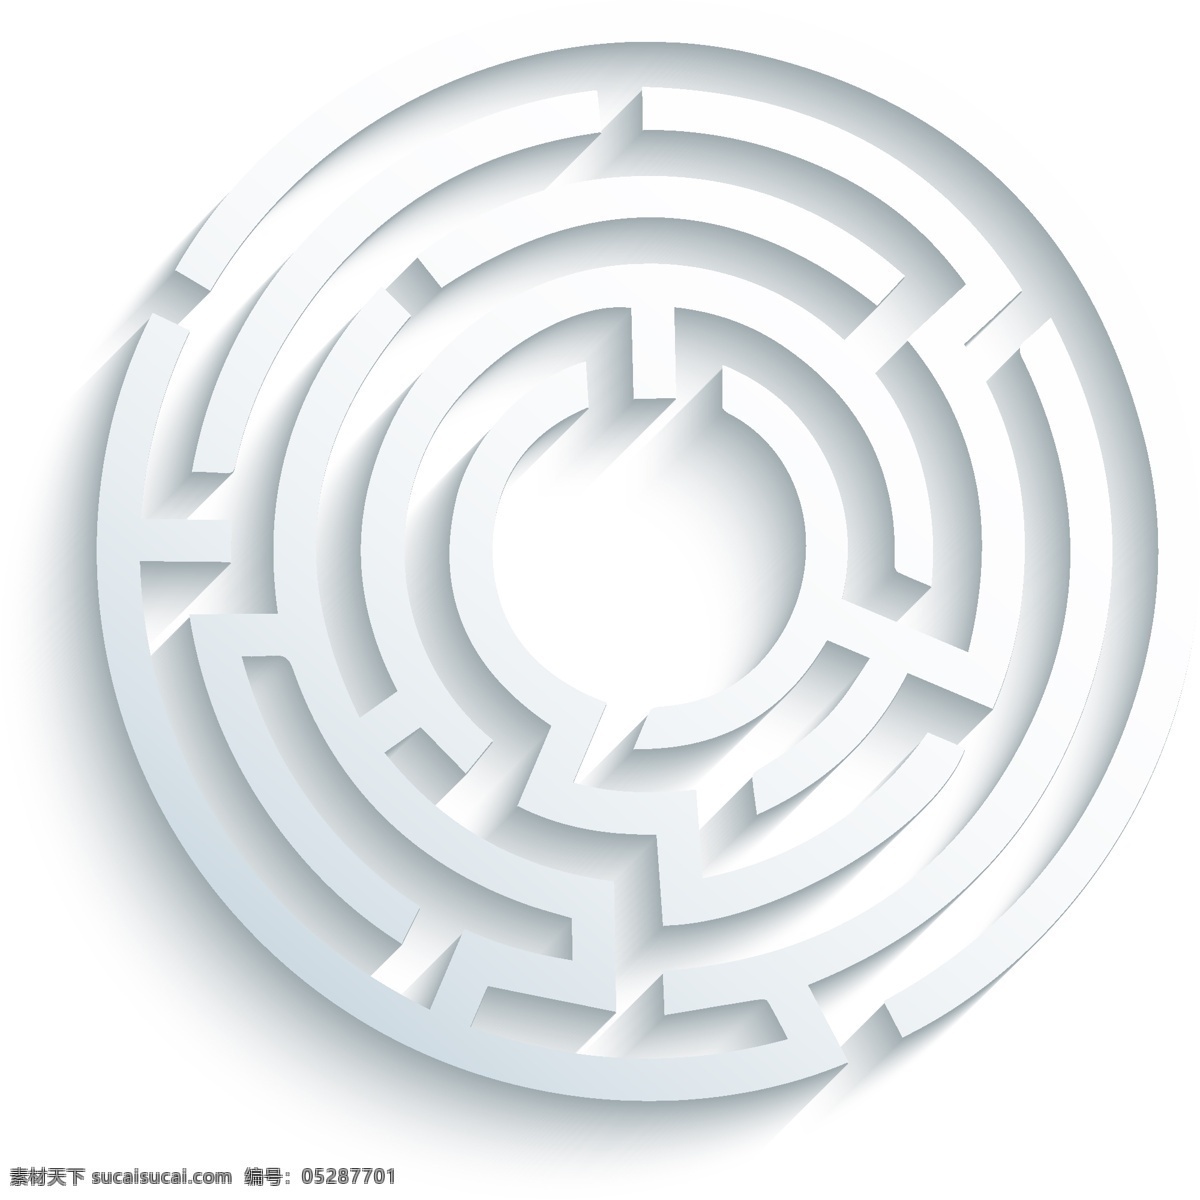 圆形立体迷宫 矢量素材 圆形 立体迷宫 剪纸游戏